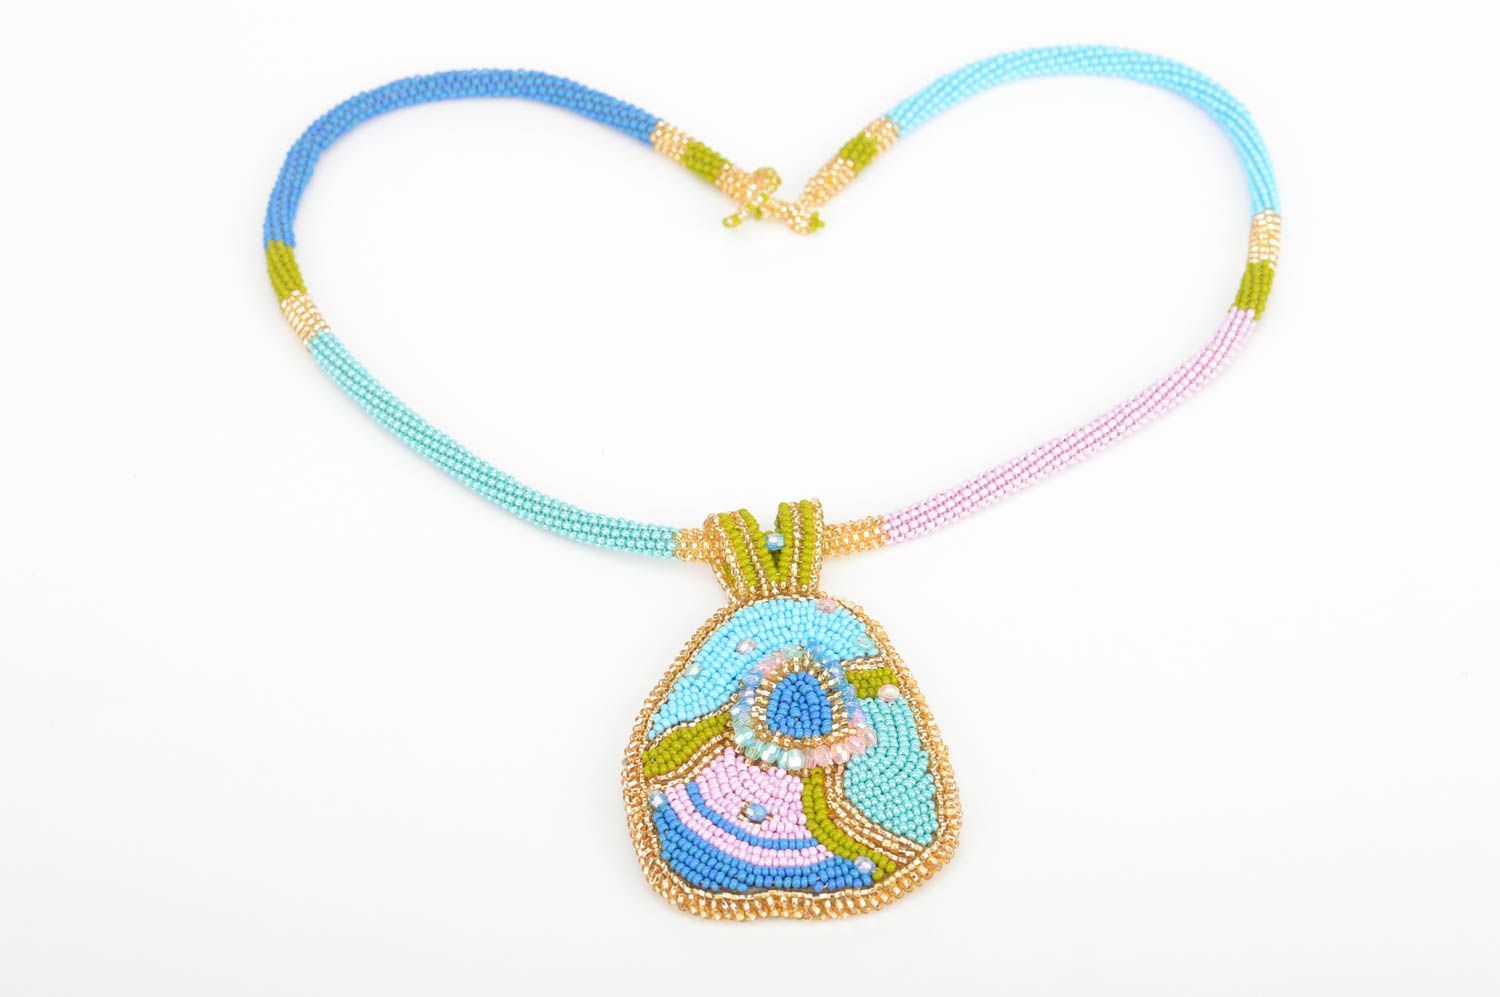 Ожерелье из бисера разноцветное с кулоном оригинальное красивое ручной работы фото 2